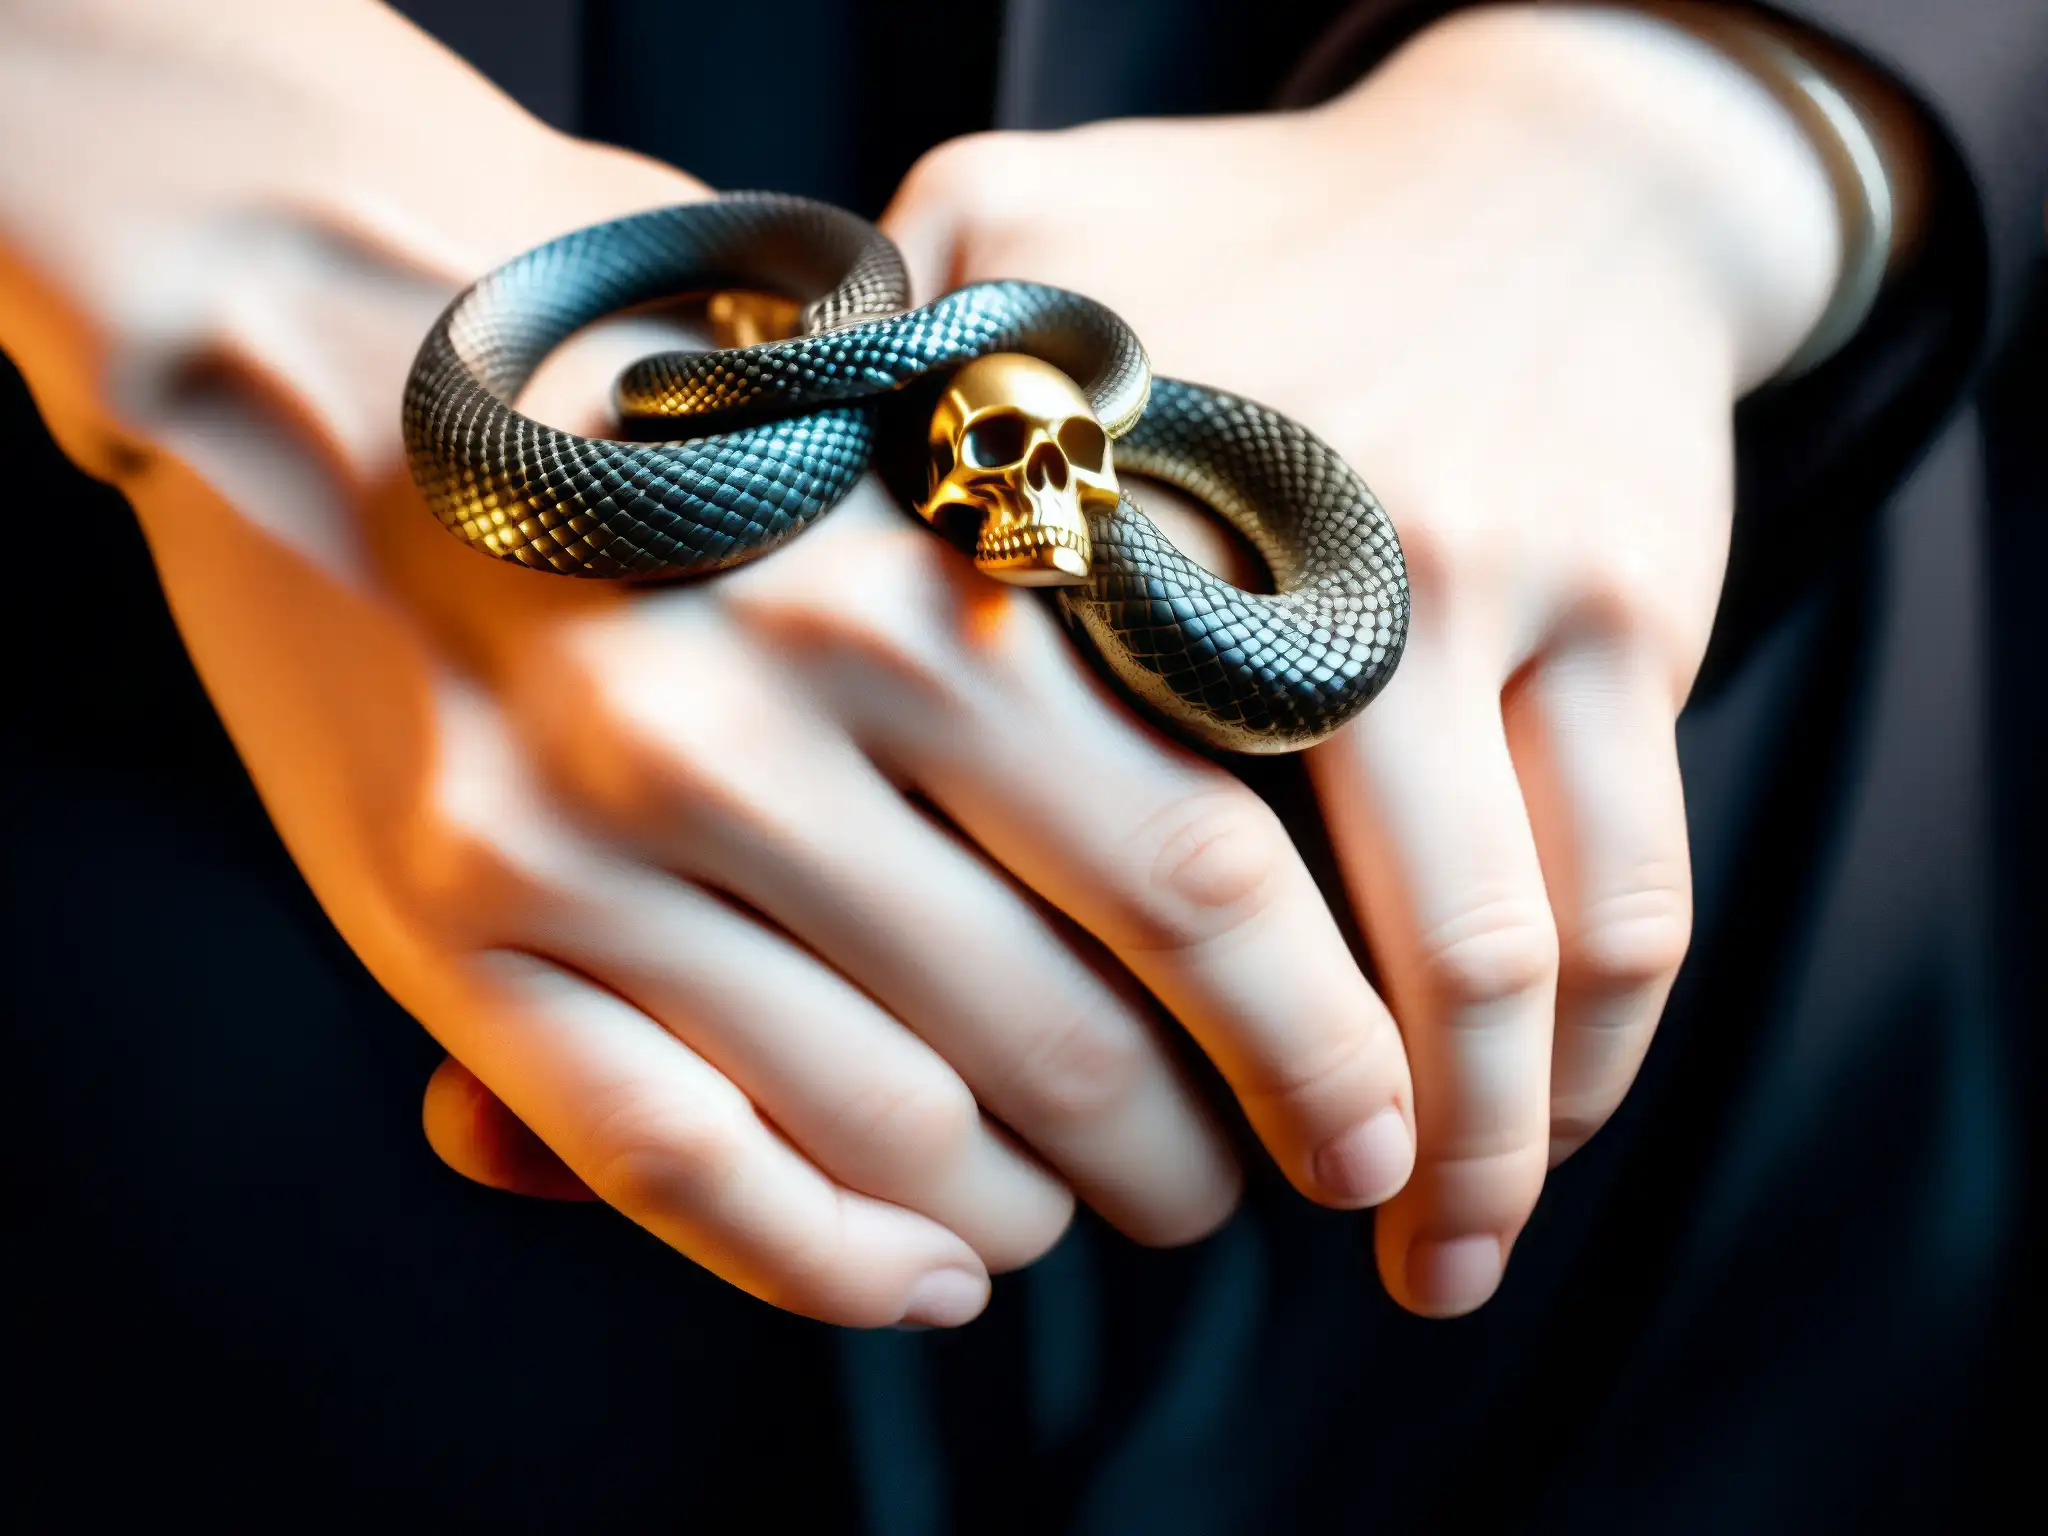 Un agarre tenso entre dos manos, una con un anillo de serpiente siniestra y la otra con un anillo de calavera, en un escenario ominoso